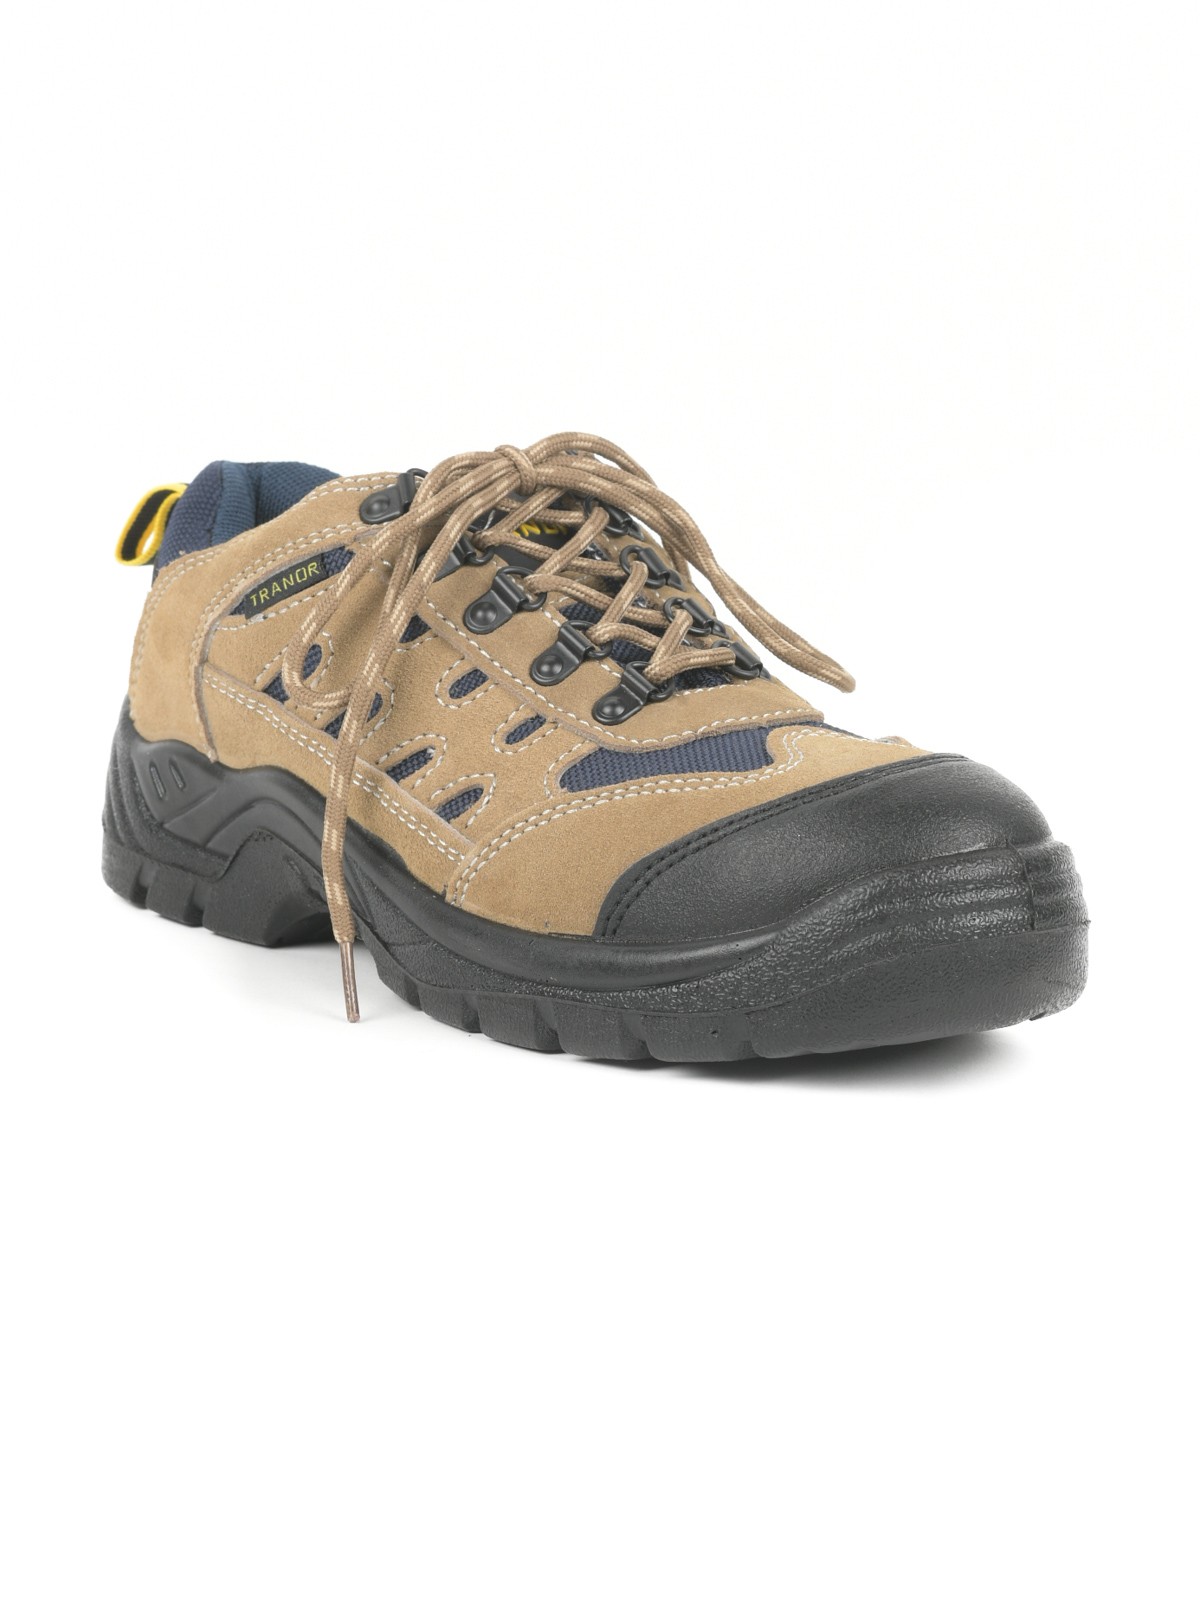 Chaussures de sécurité homme (40-46) - DistriCenter